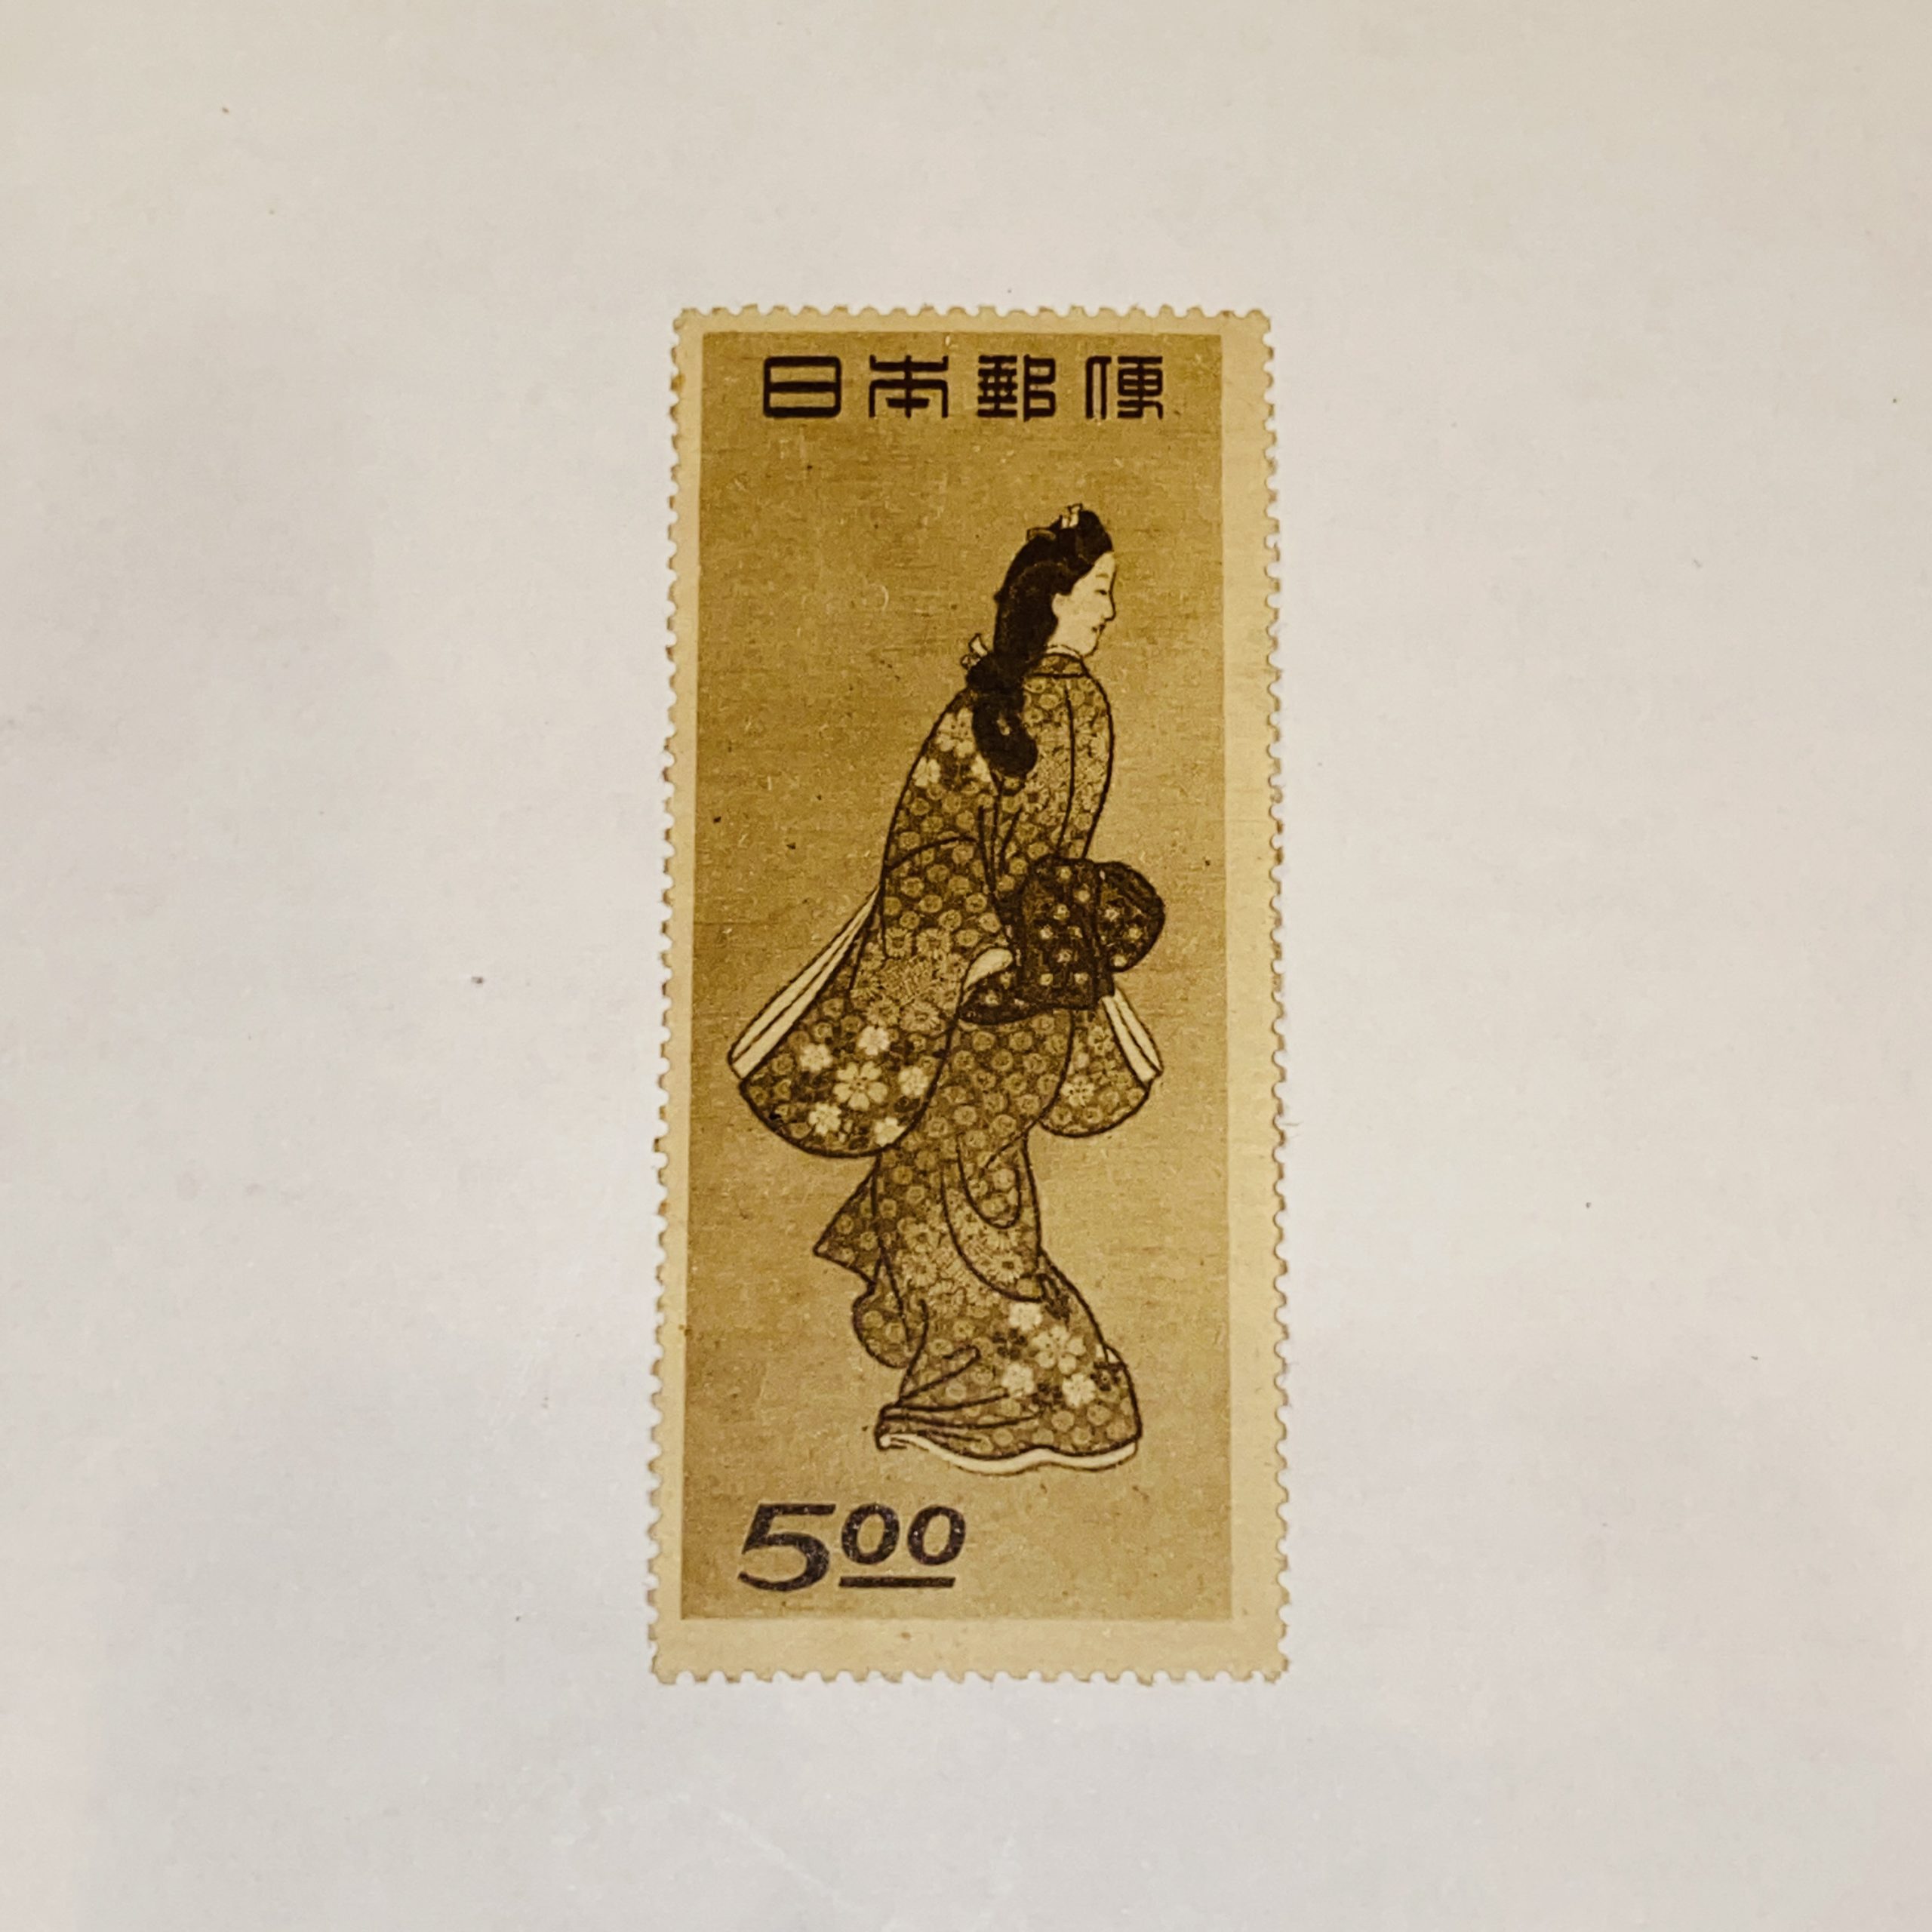 【日本記念切手】見返り美人 切手趣味習慣 5円 